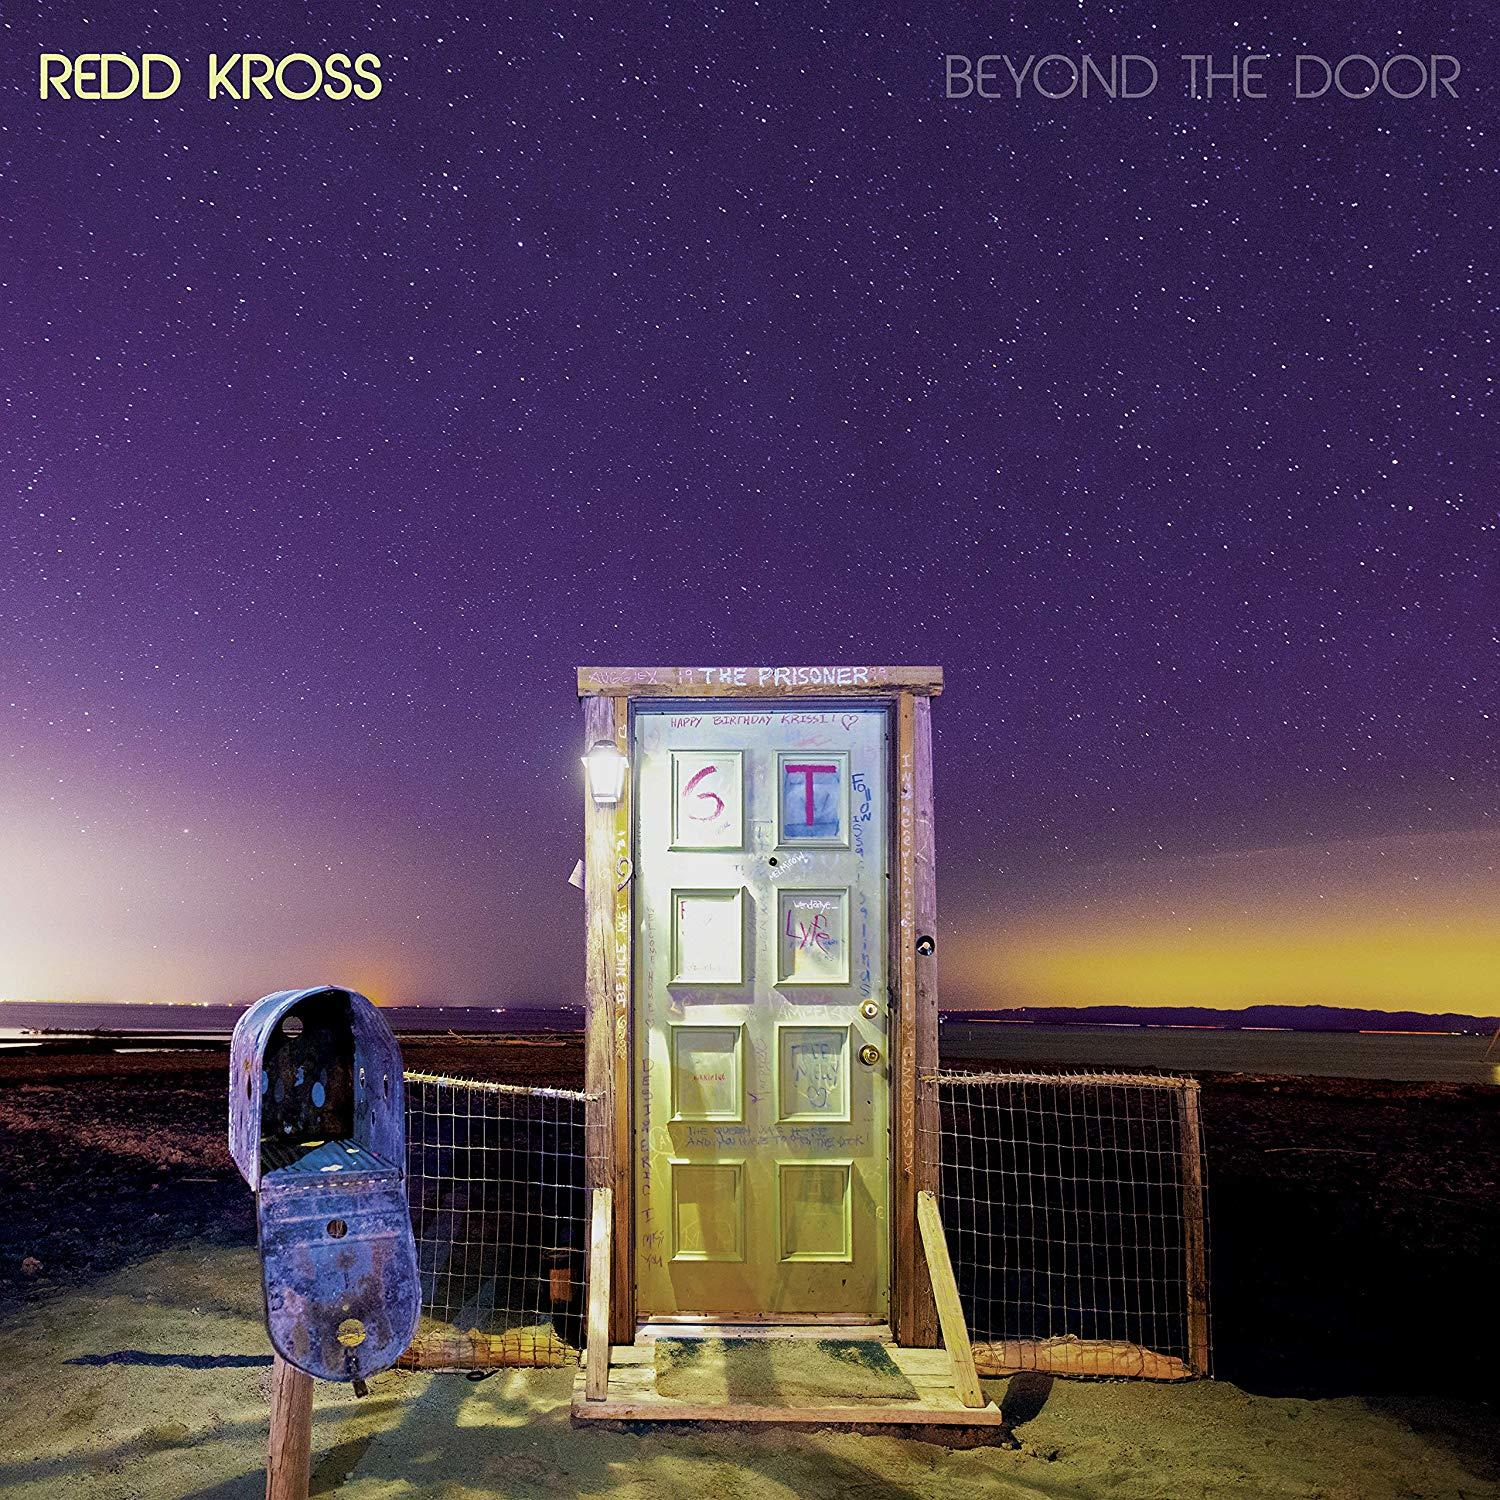 door the beyond - (Vinyl) - Redd Kross